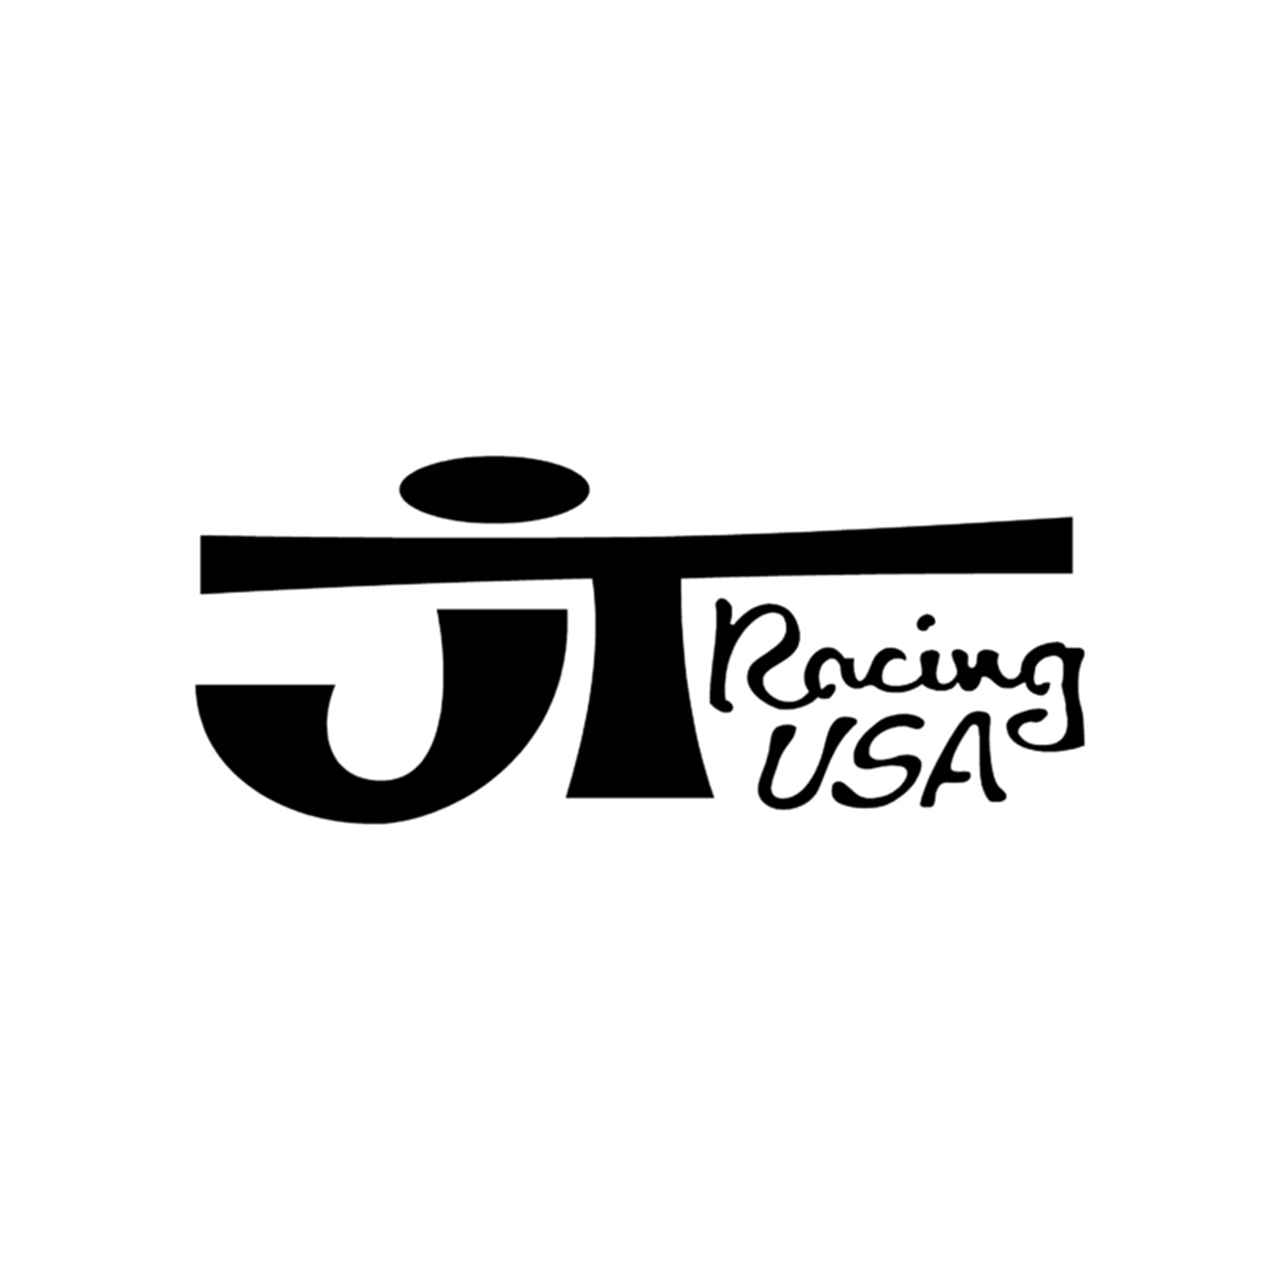 JT Racing Logo - Jt Racing Usa Vinyl Decal